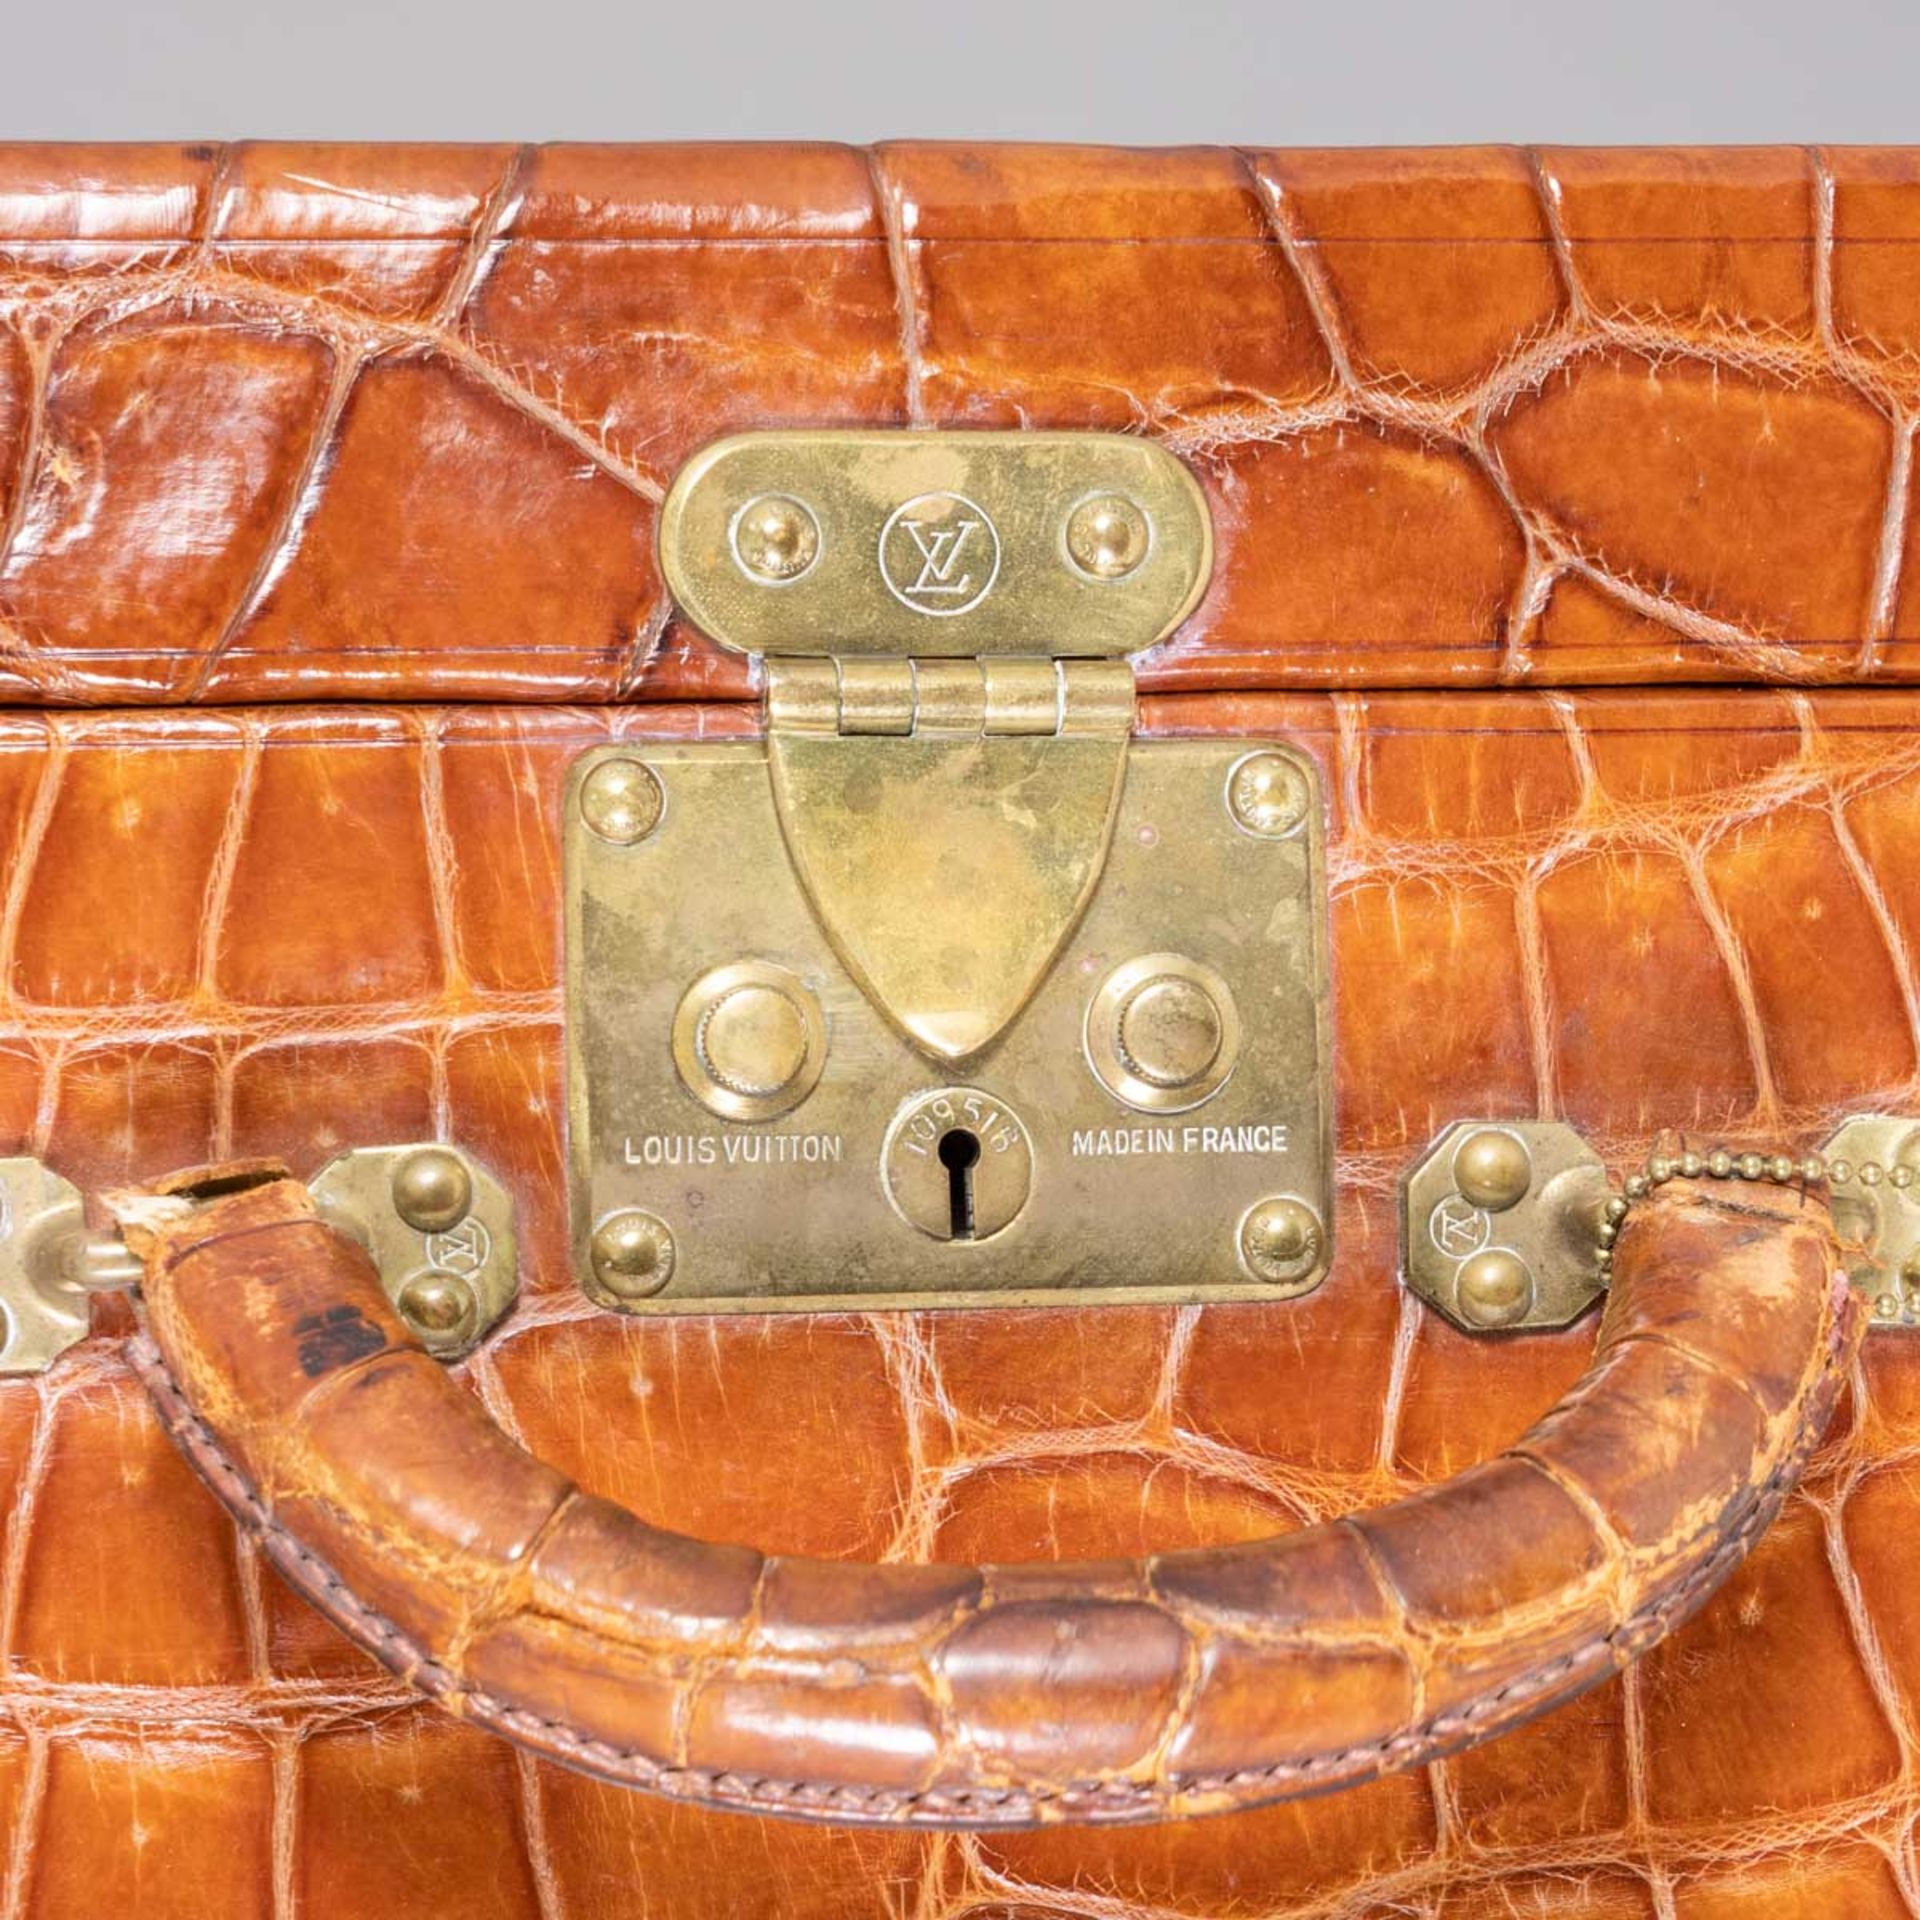 Louis Vuitton vintage suitcase - Image 5 of 8